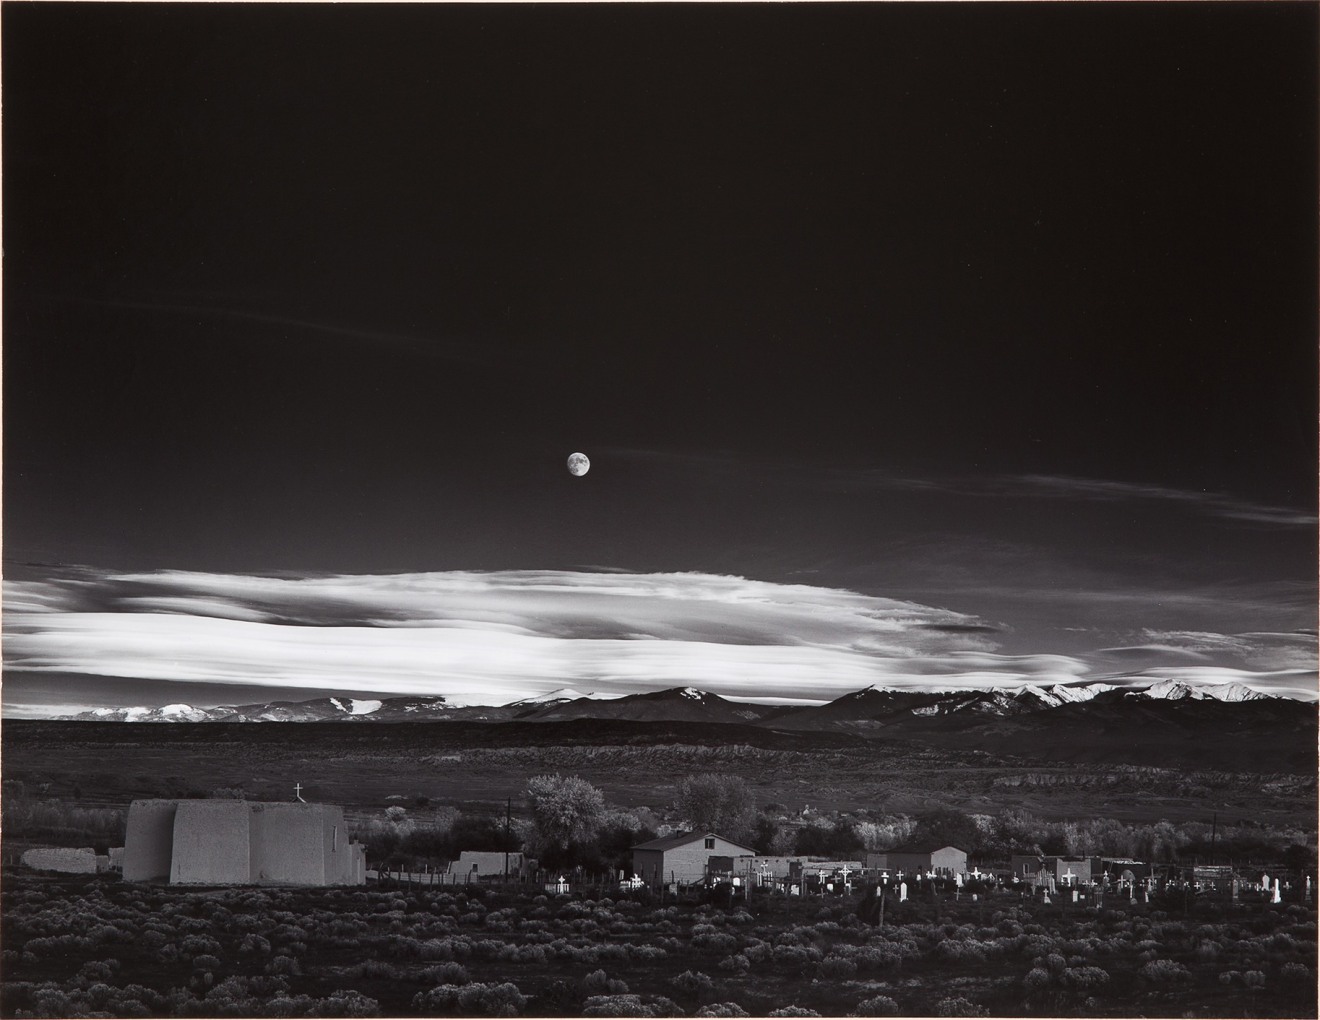 Moonrise, Hernandez, New Mexico, 1941